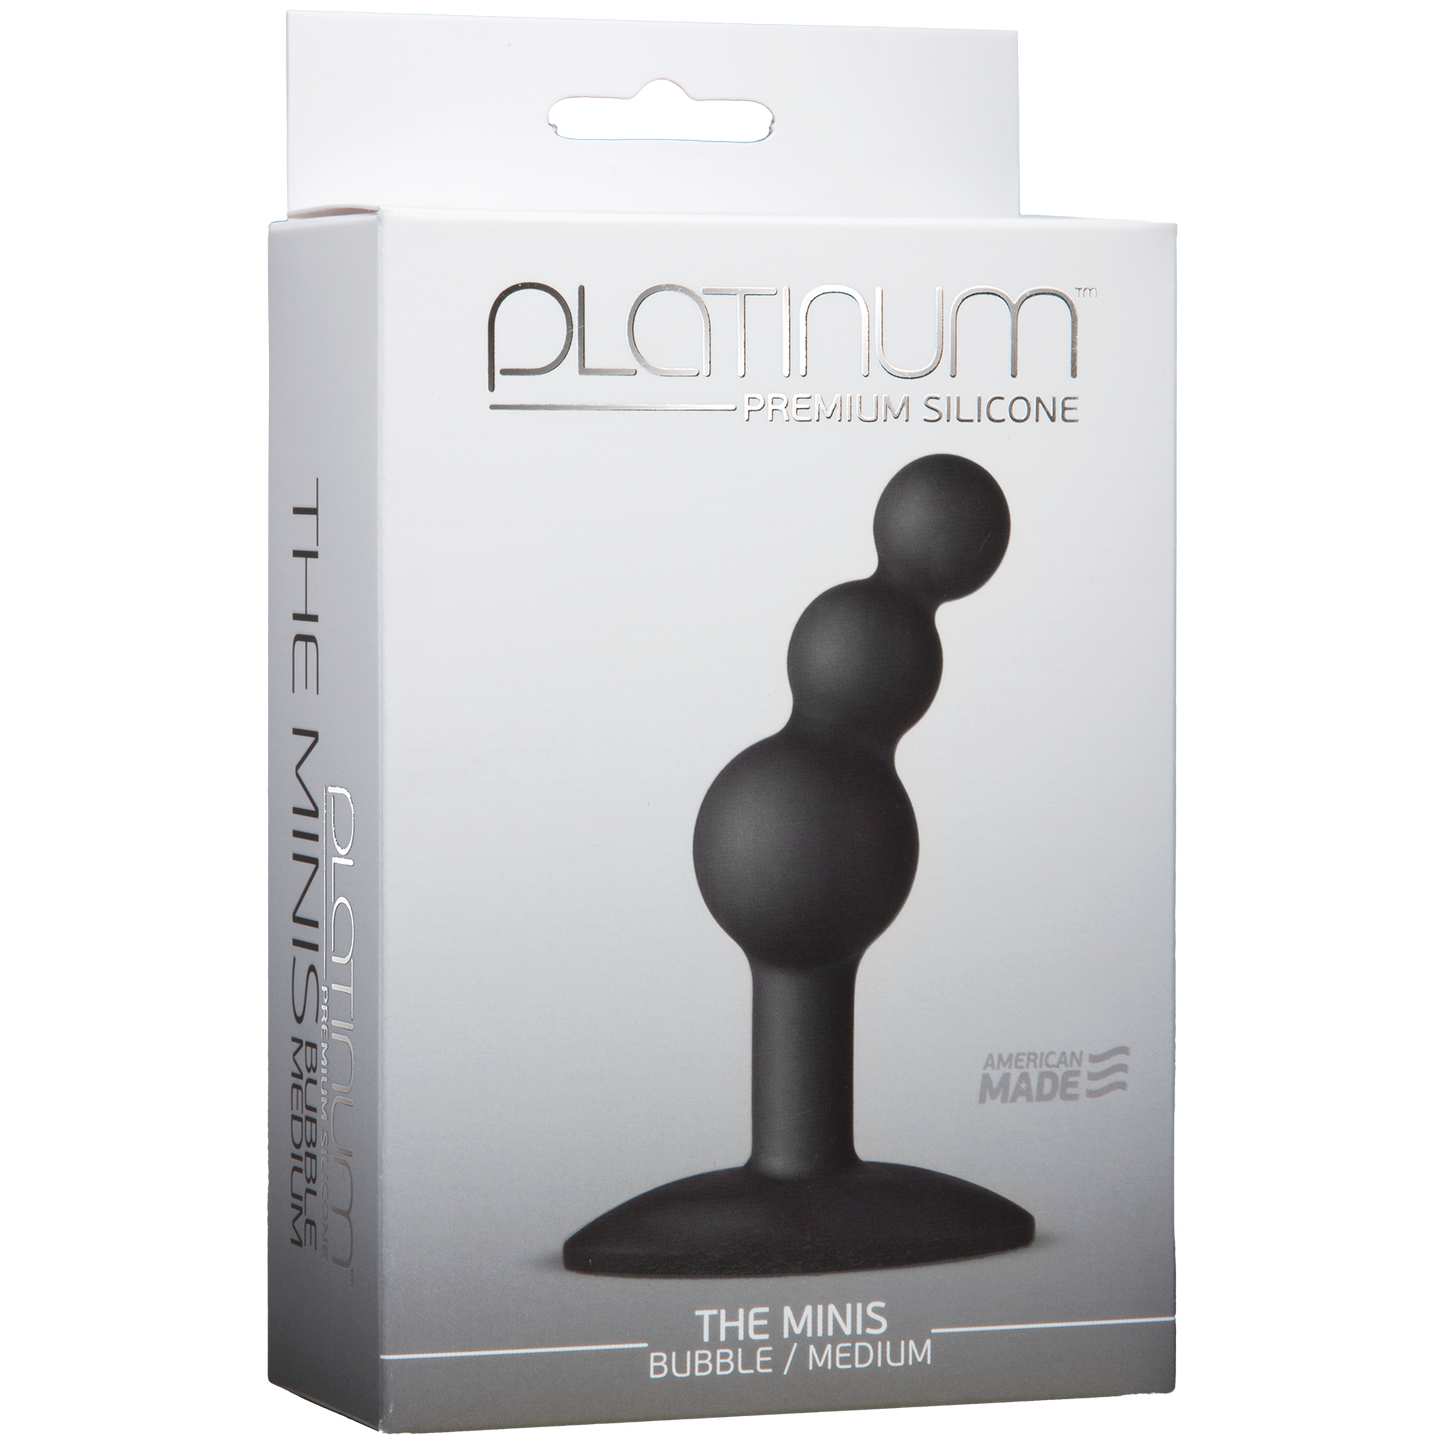 Platinum Premium Silicone The Mini's Bubble - Medium, Black - Thorn & Feather Sex Toy Canada